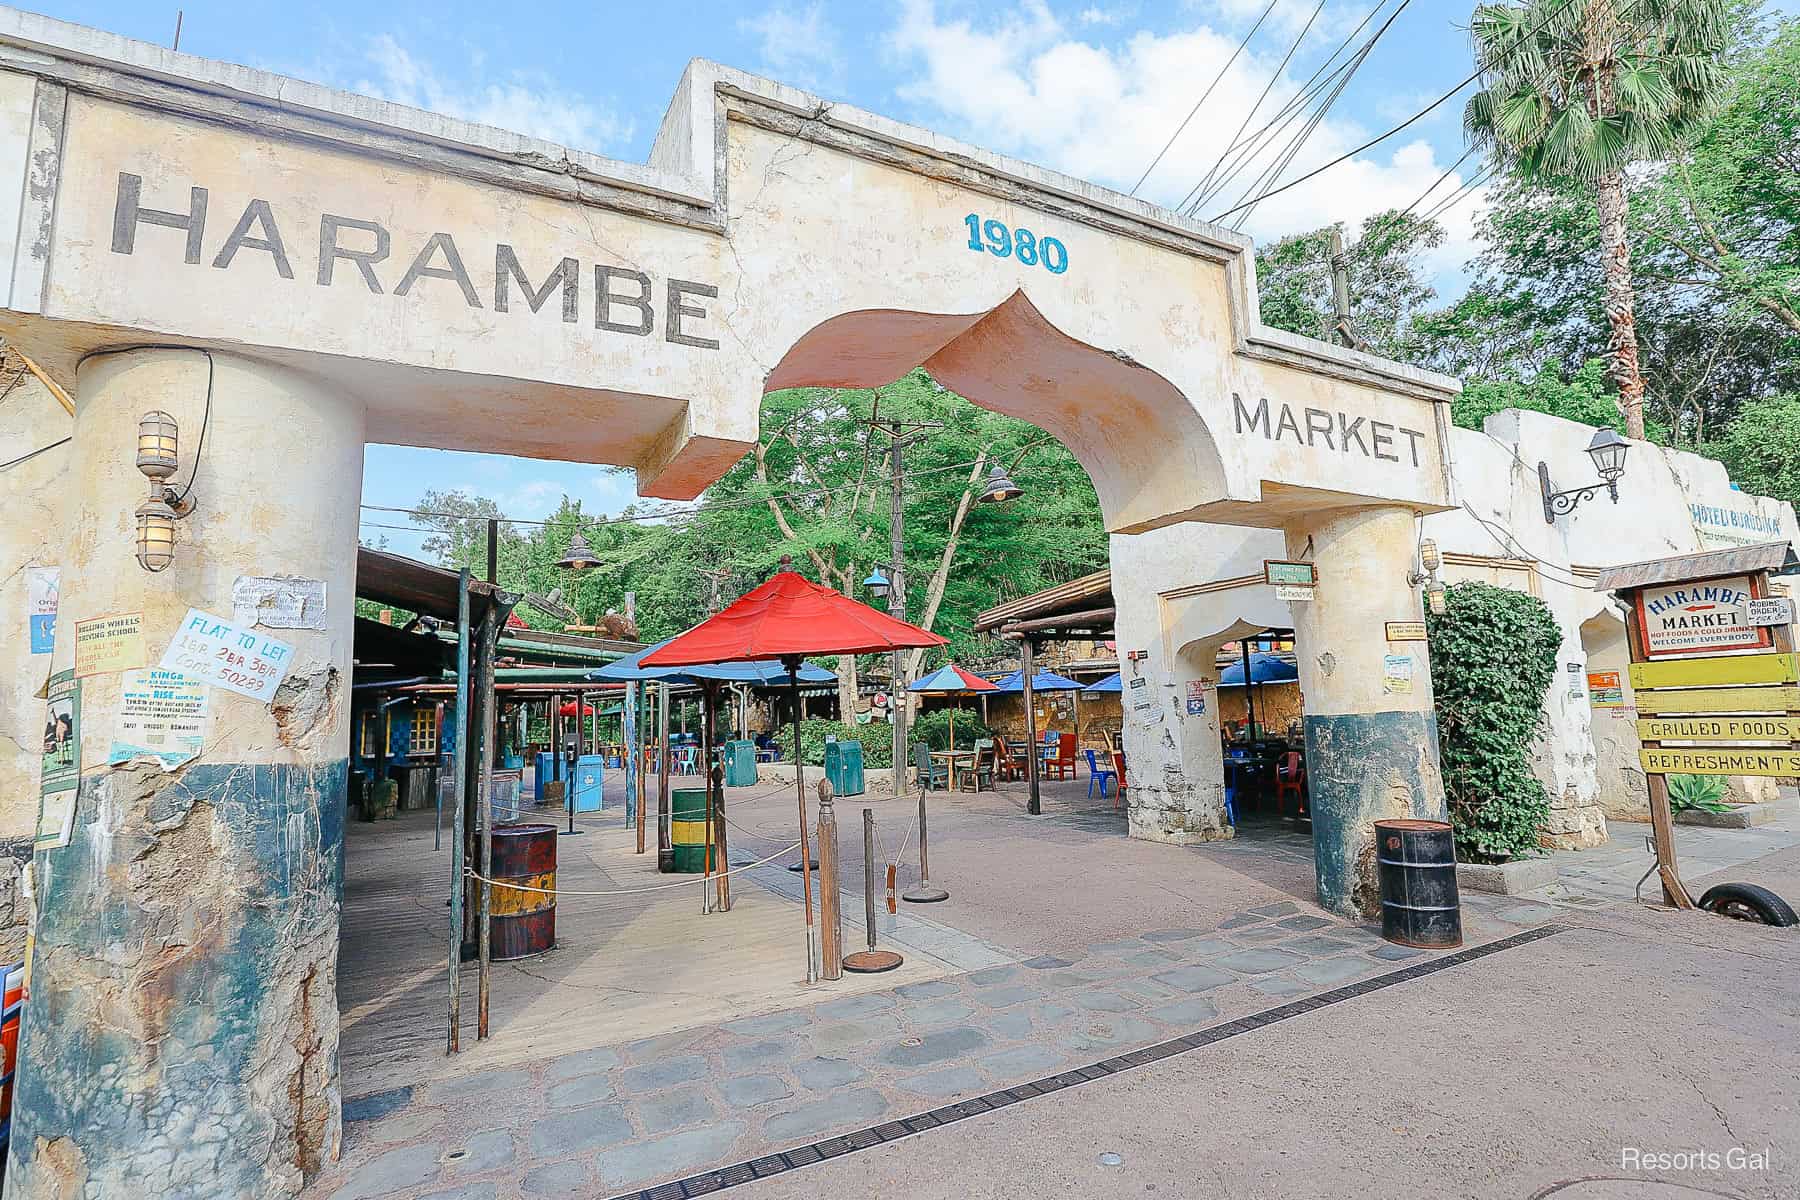 Review: Harambe Market at Disney’s Animal Kingdom + Photos